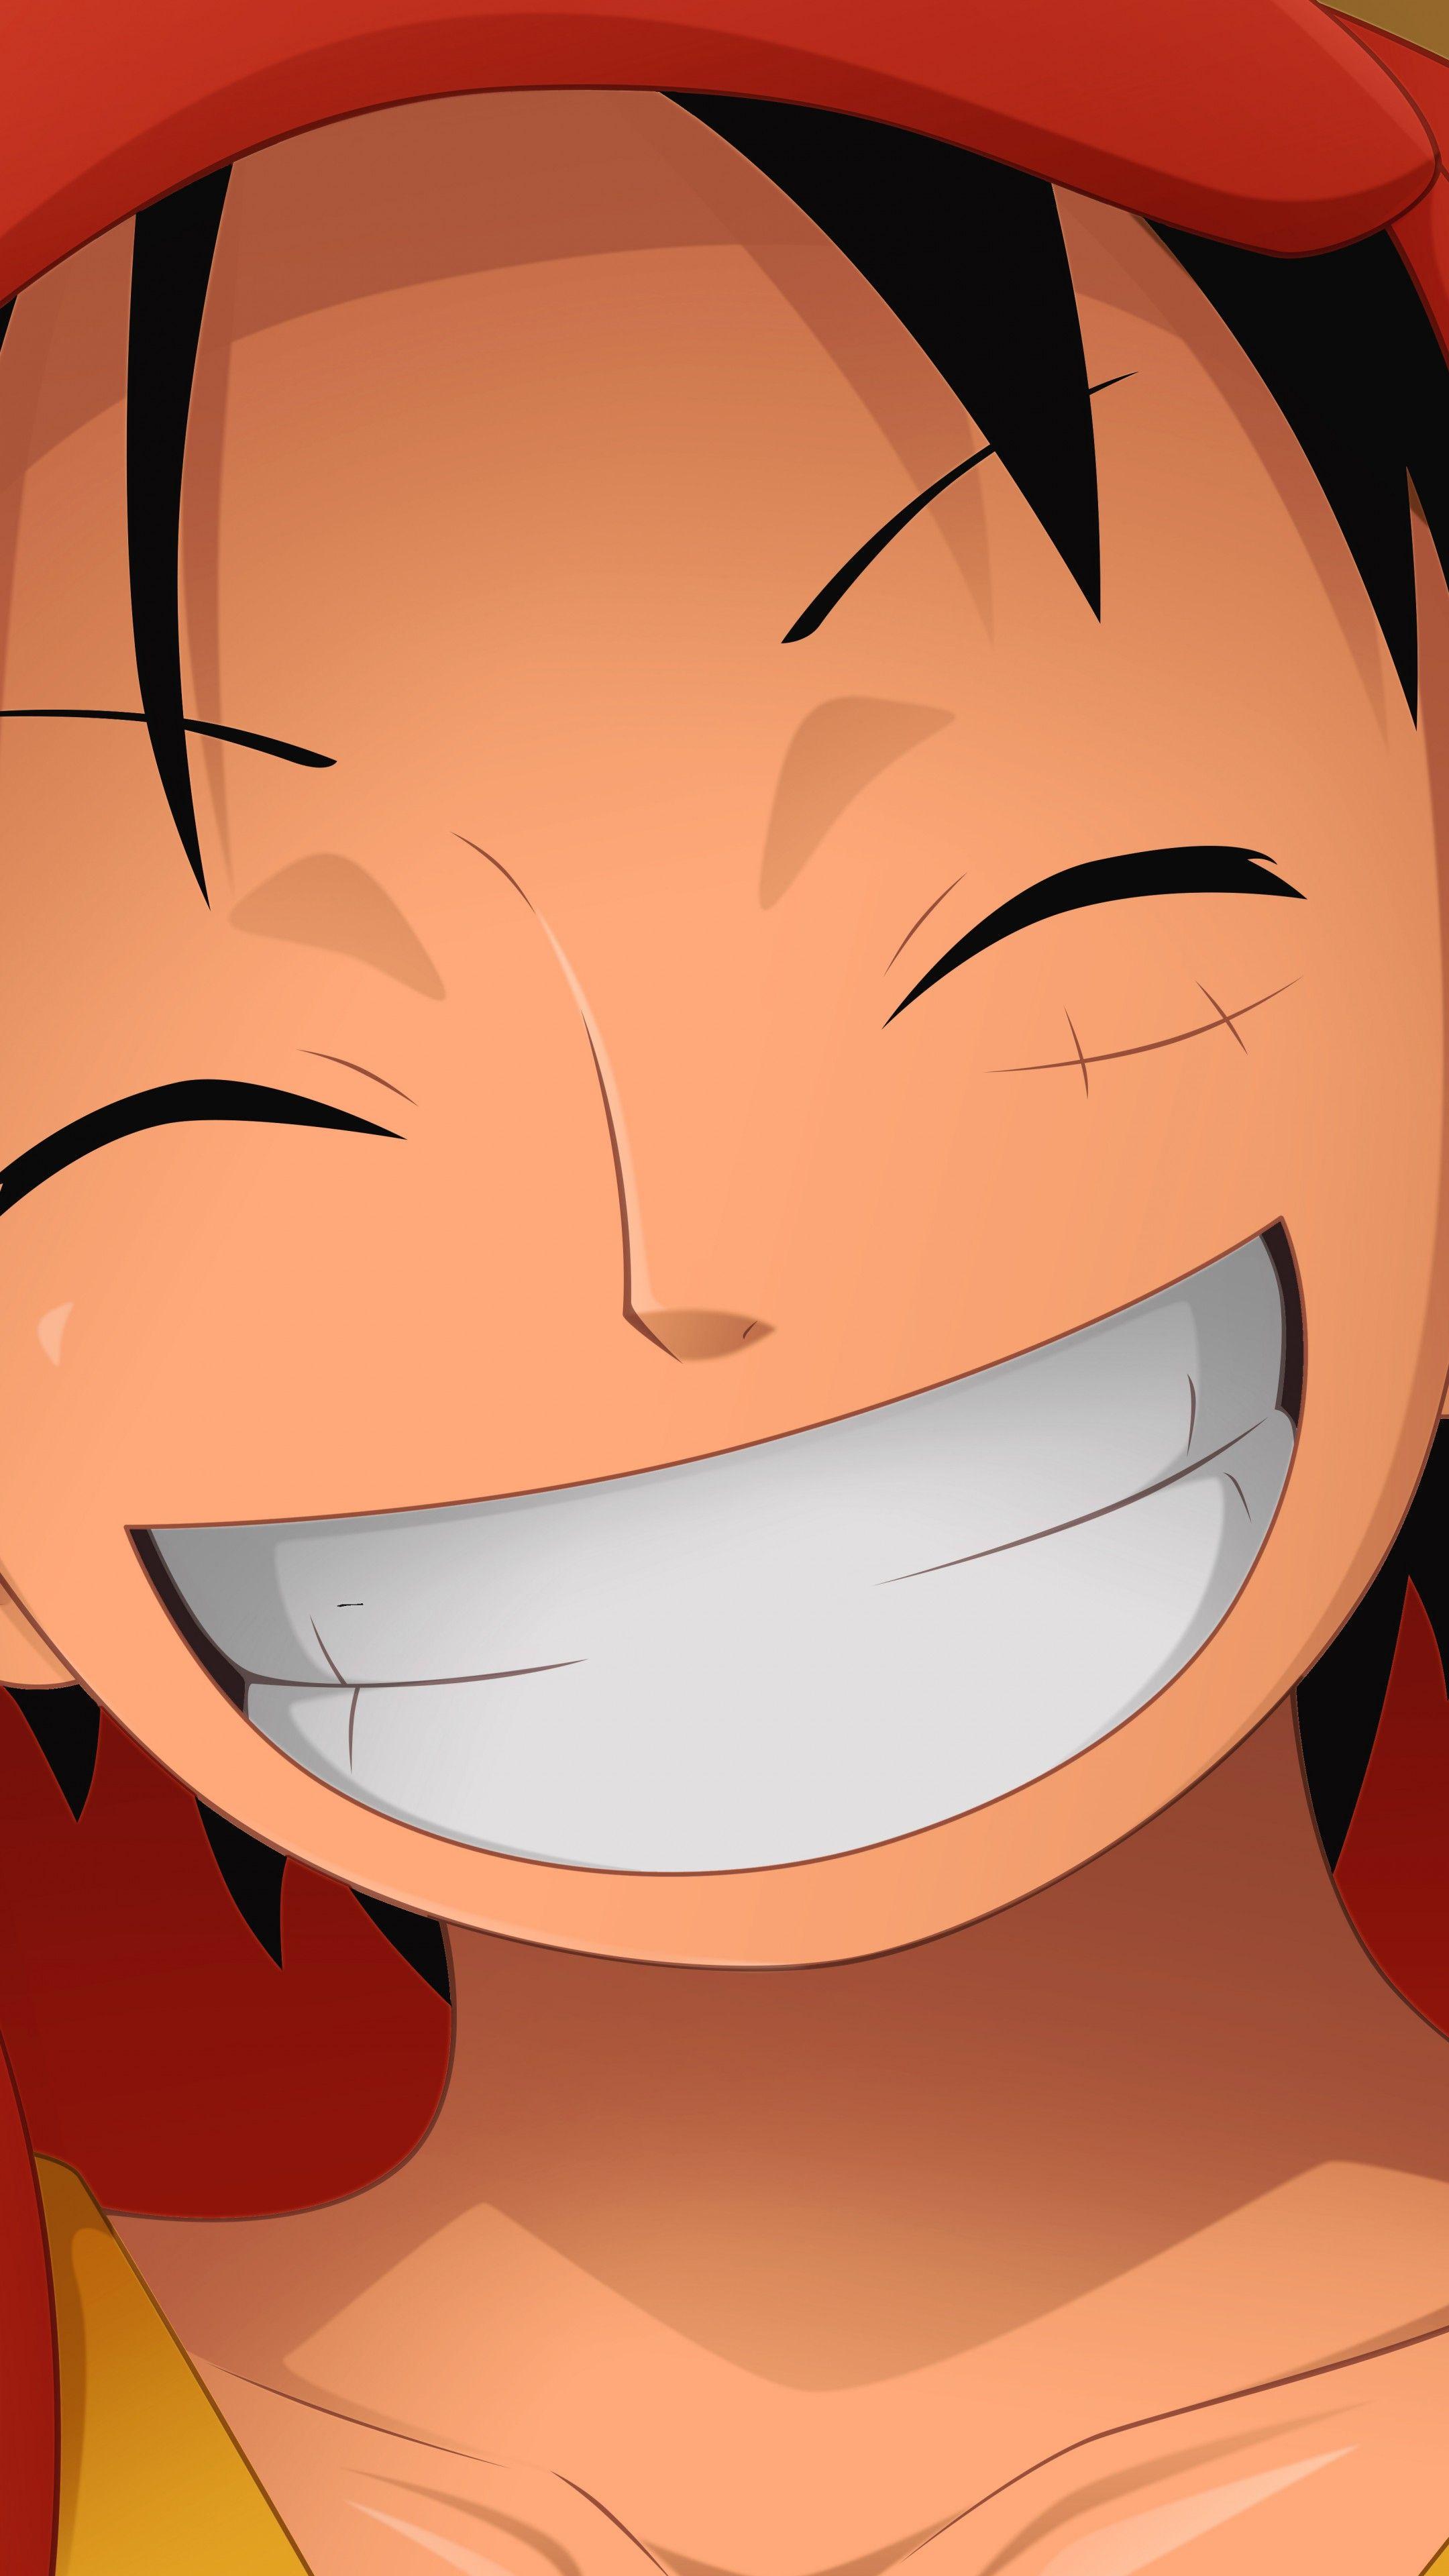 Bạn là fan của anime One Piece và đặc biệt yêu thích nhân vật Luffy? Hãy xem ngay hình nền anime Luffy đầy màu sắc và phong cách đặc trưng của anime này. Bạn sẽ cảm thấy cuốn hút bởi vẻ ngoài quyến rũ và sức mạnh không ngừng của chàng thuyền trưởng biển đại tài này.